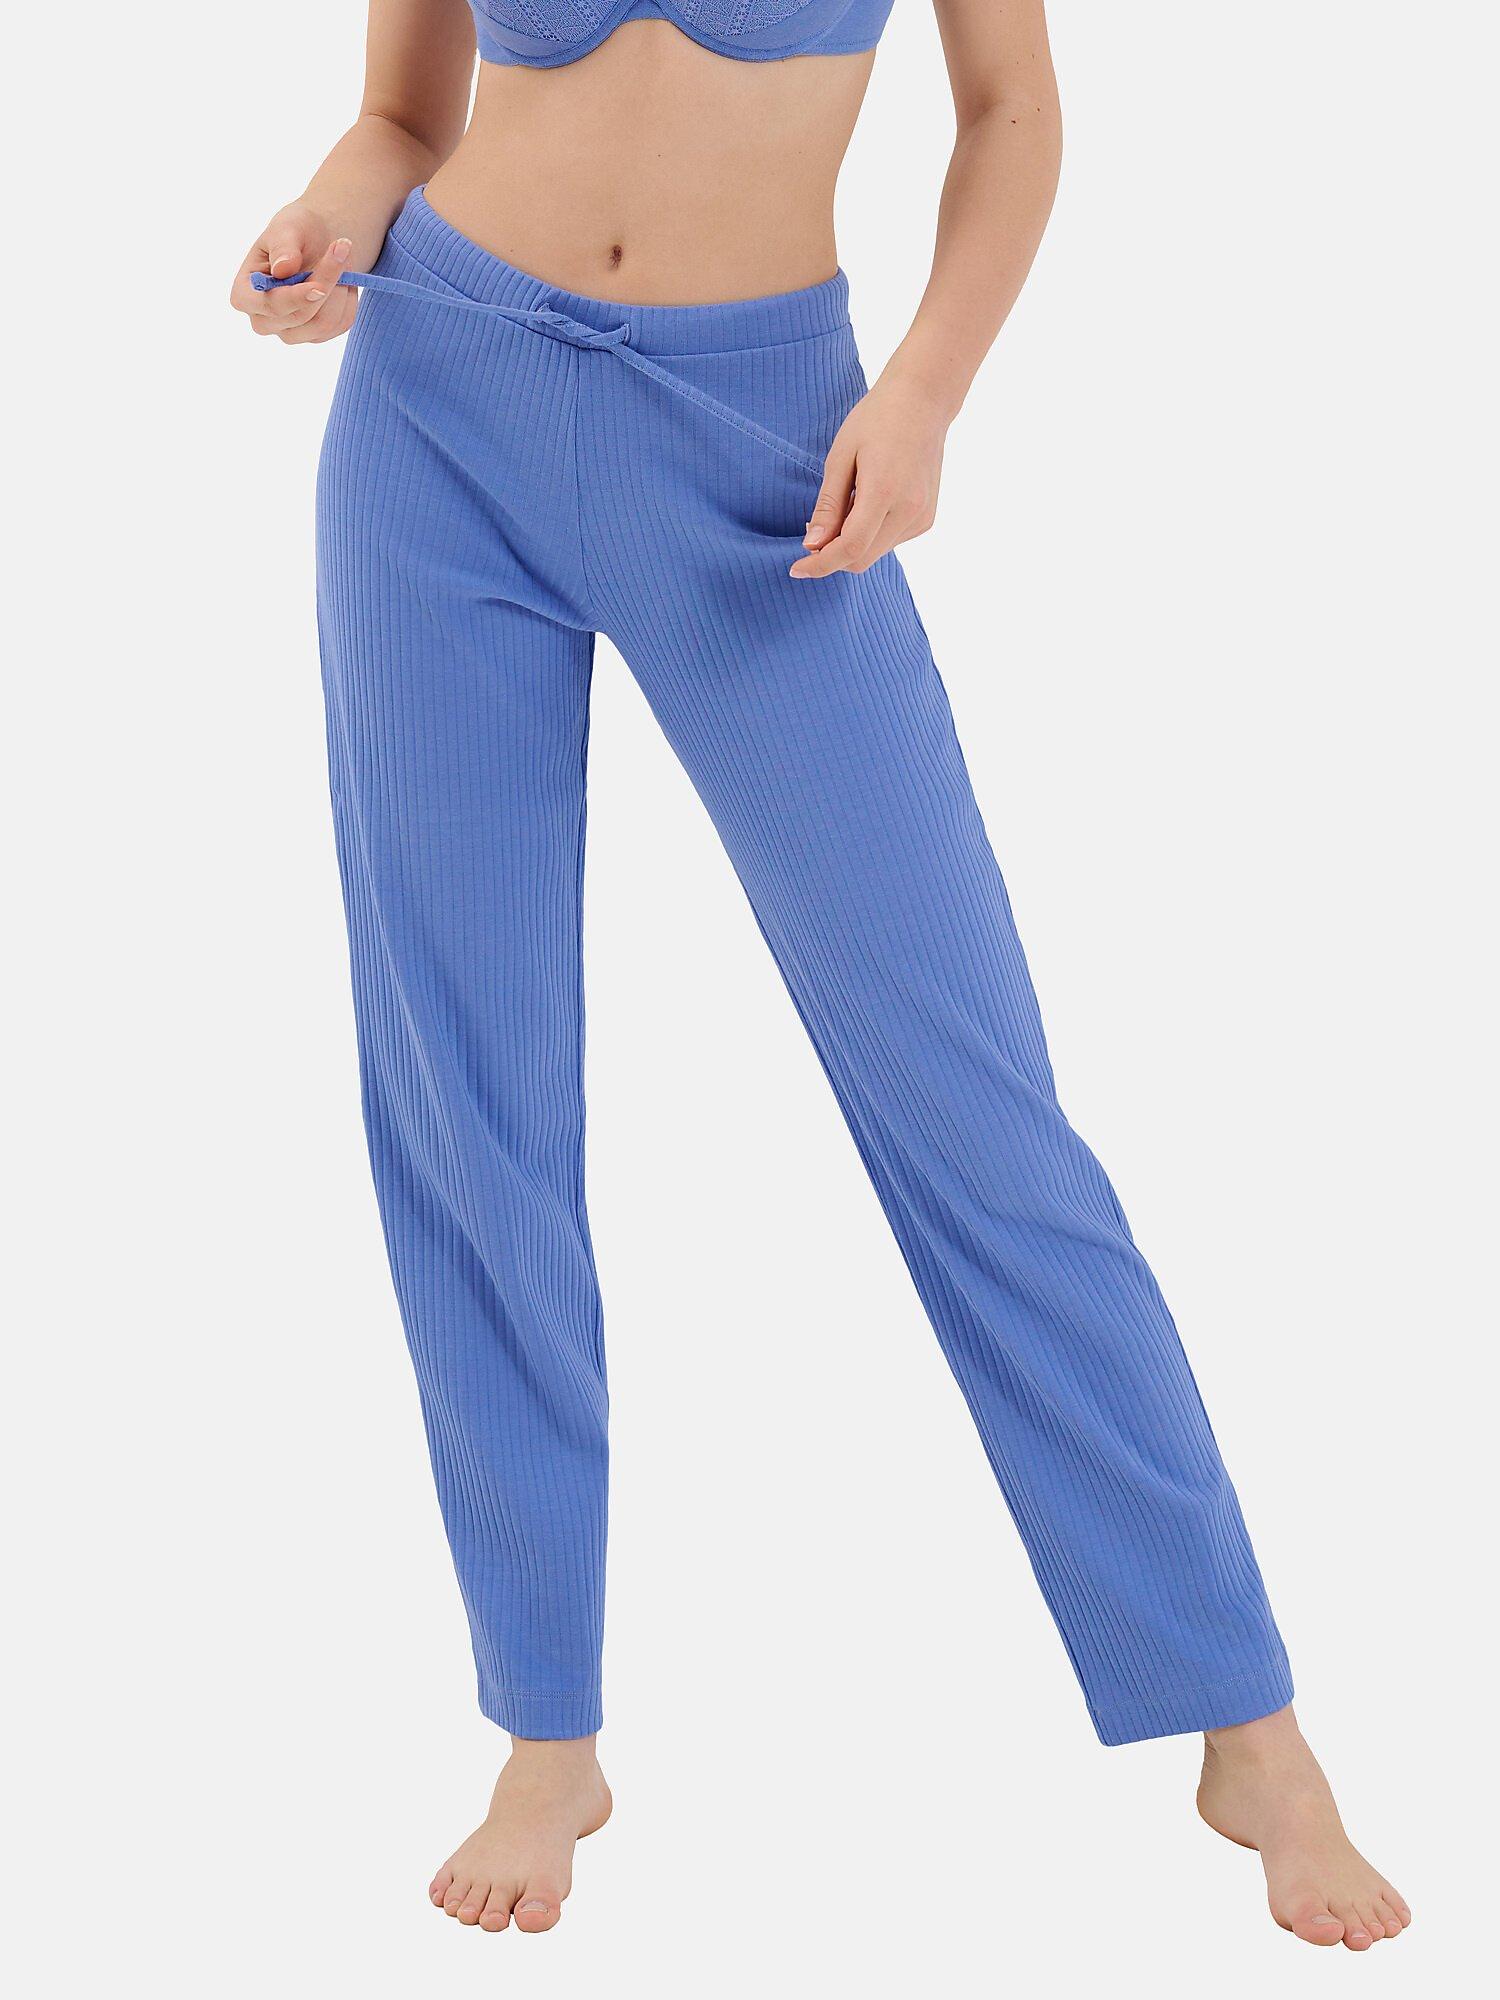 Pyjamastrümpfe Lange Hose Lucky Damen Blau XL von Lisca